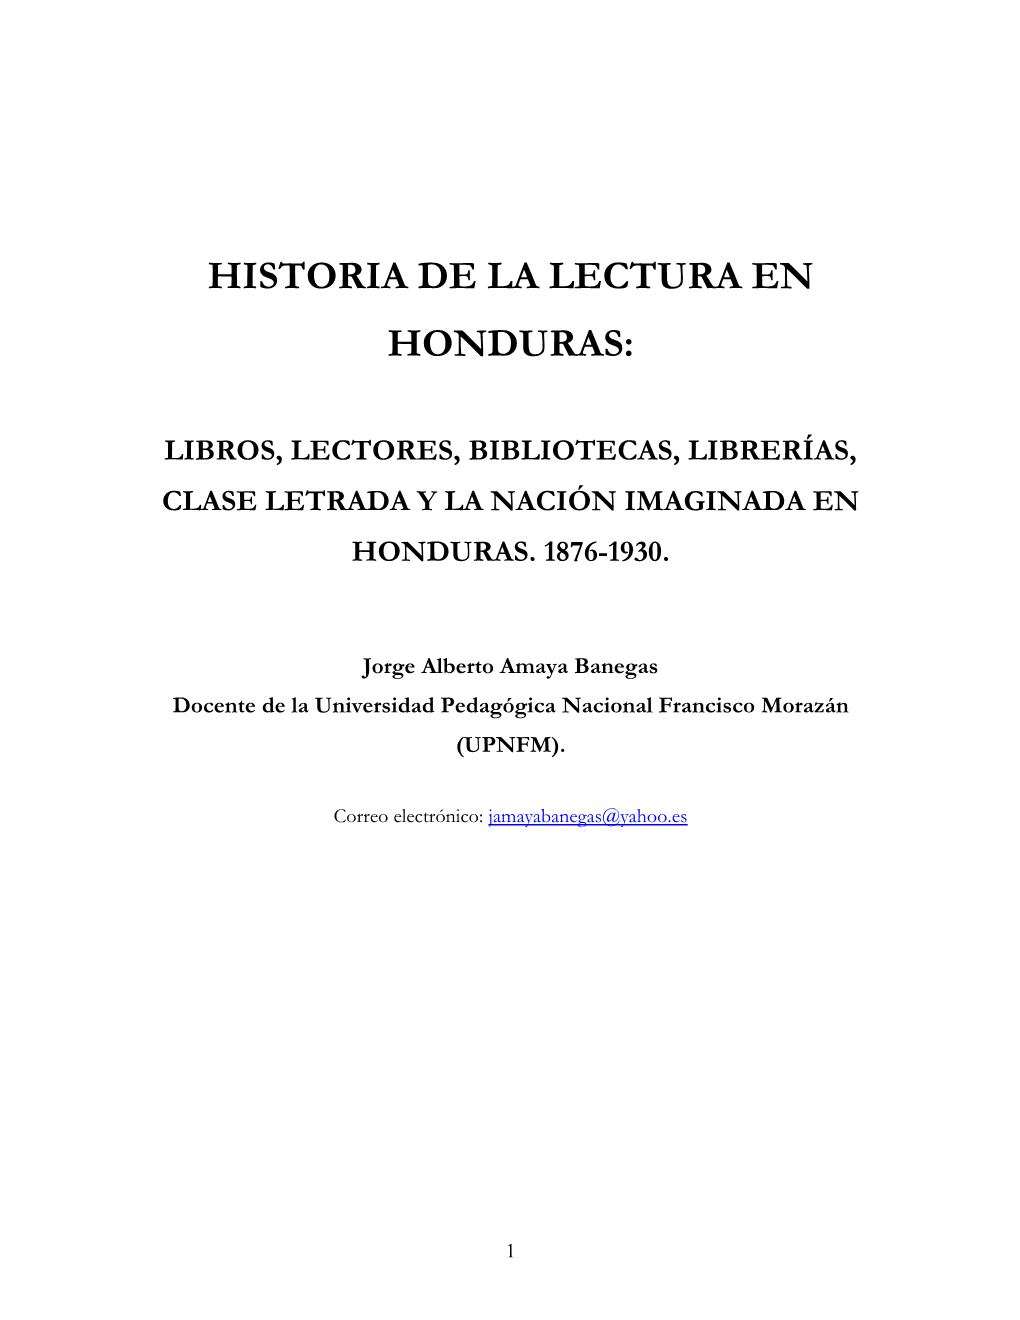 Aproximaciones a La Historia De La Lectura En Honduras